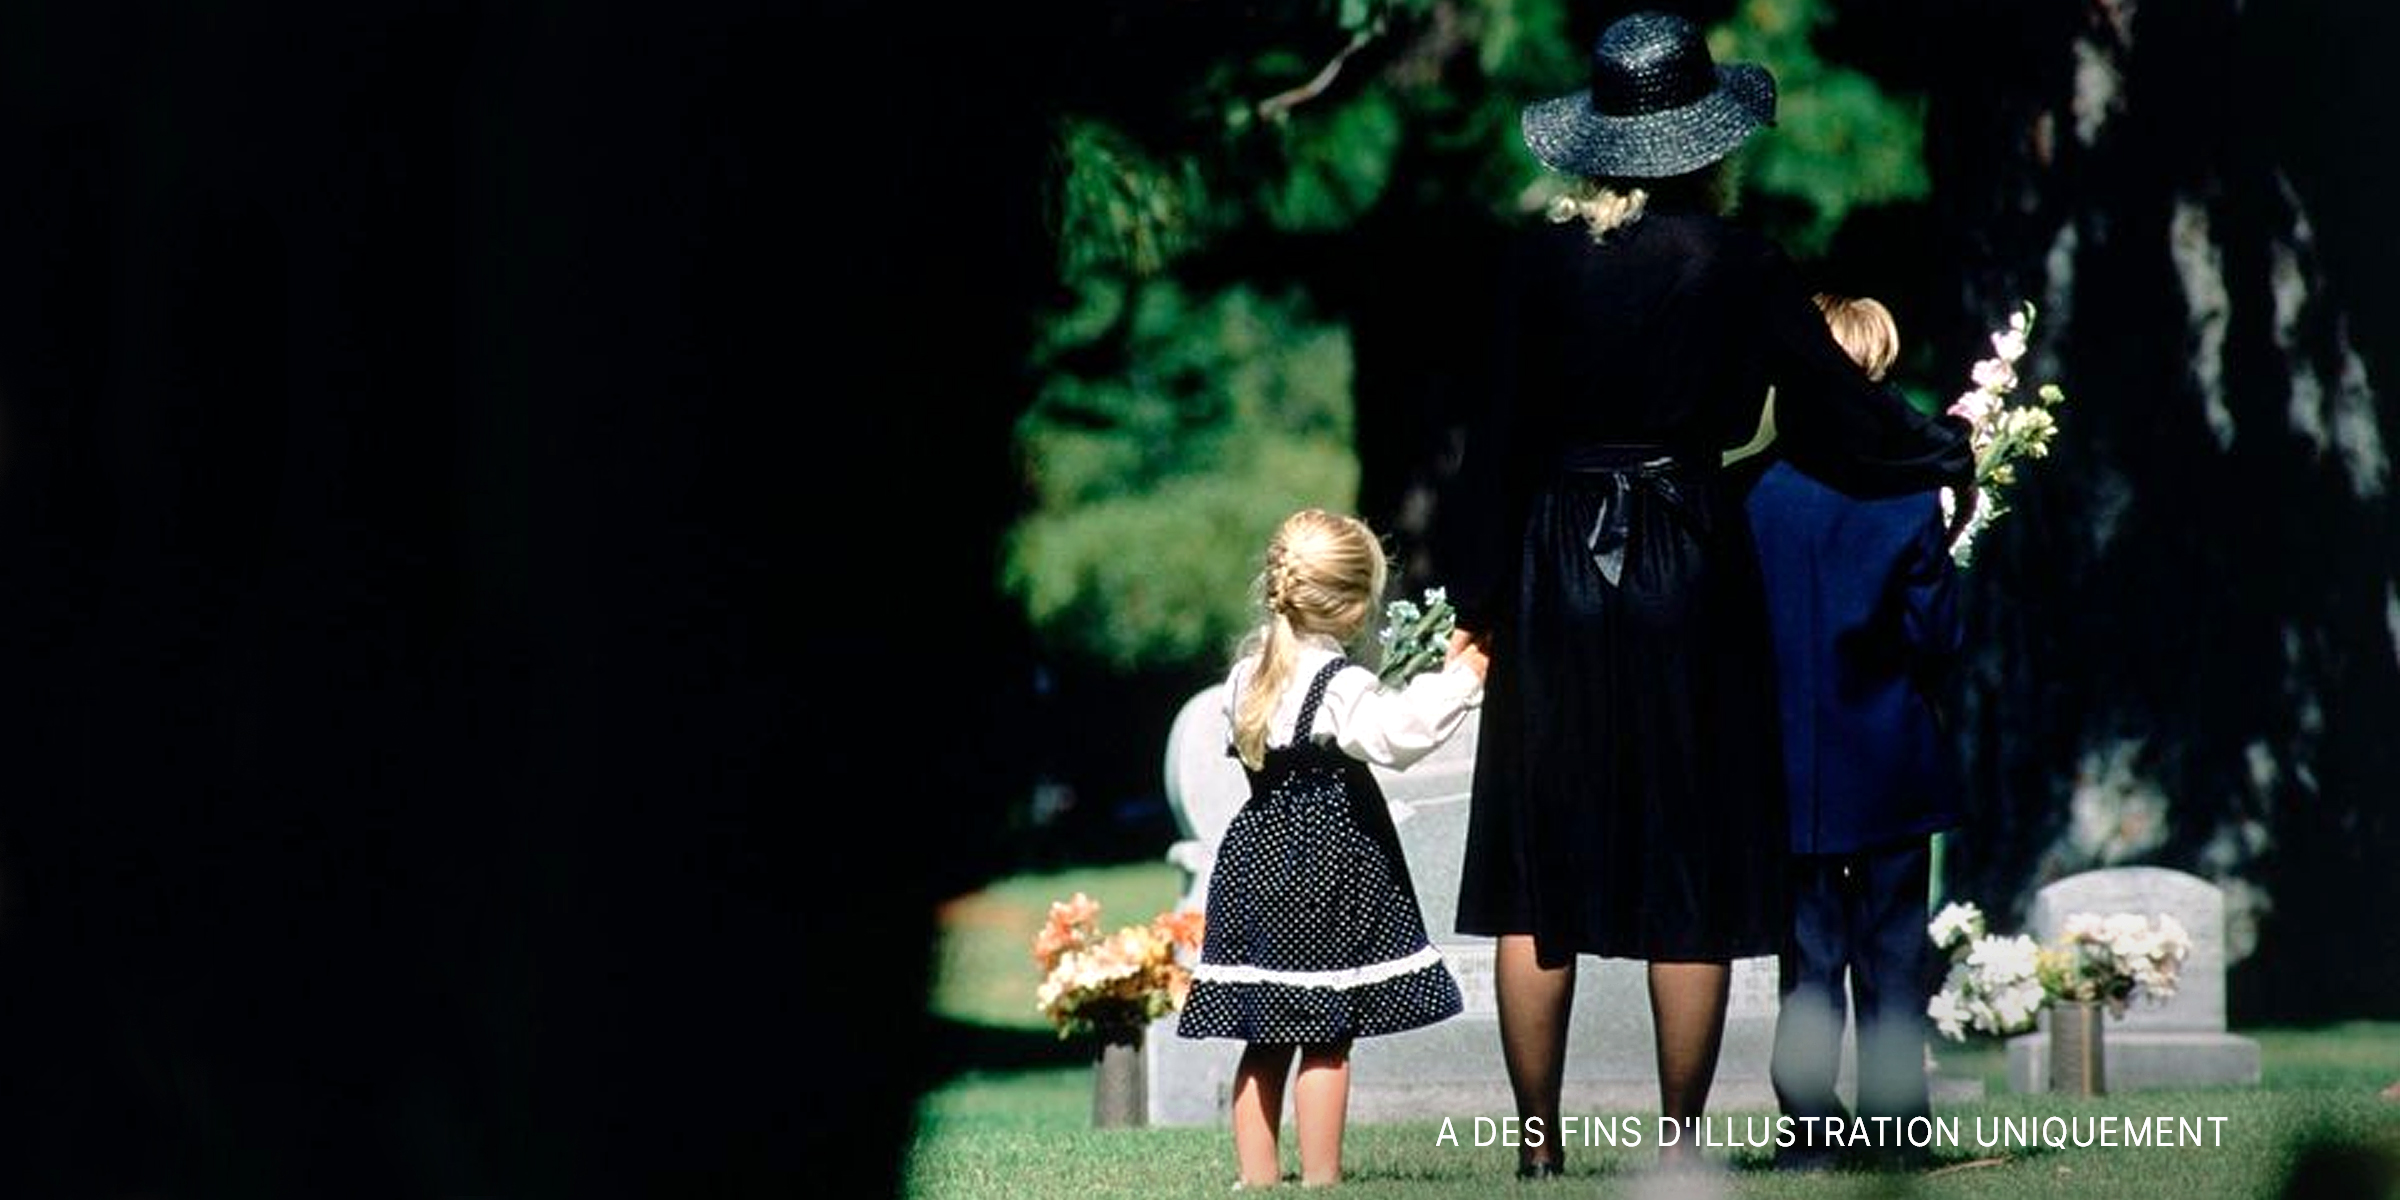 Une mère et ses enfants assistant à des funérailles | Source : Getty Images